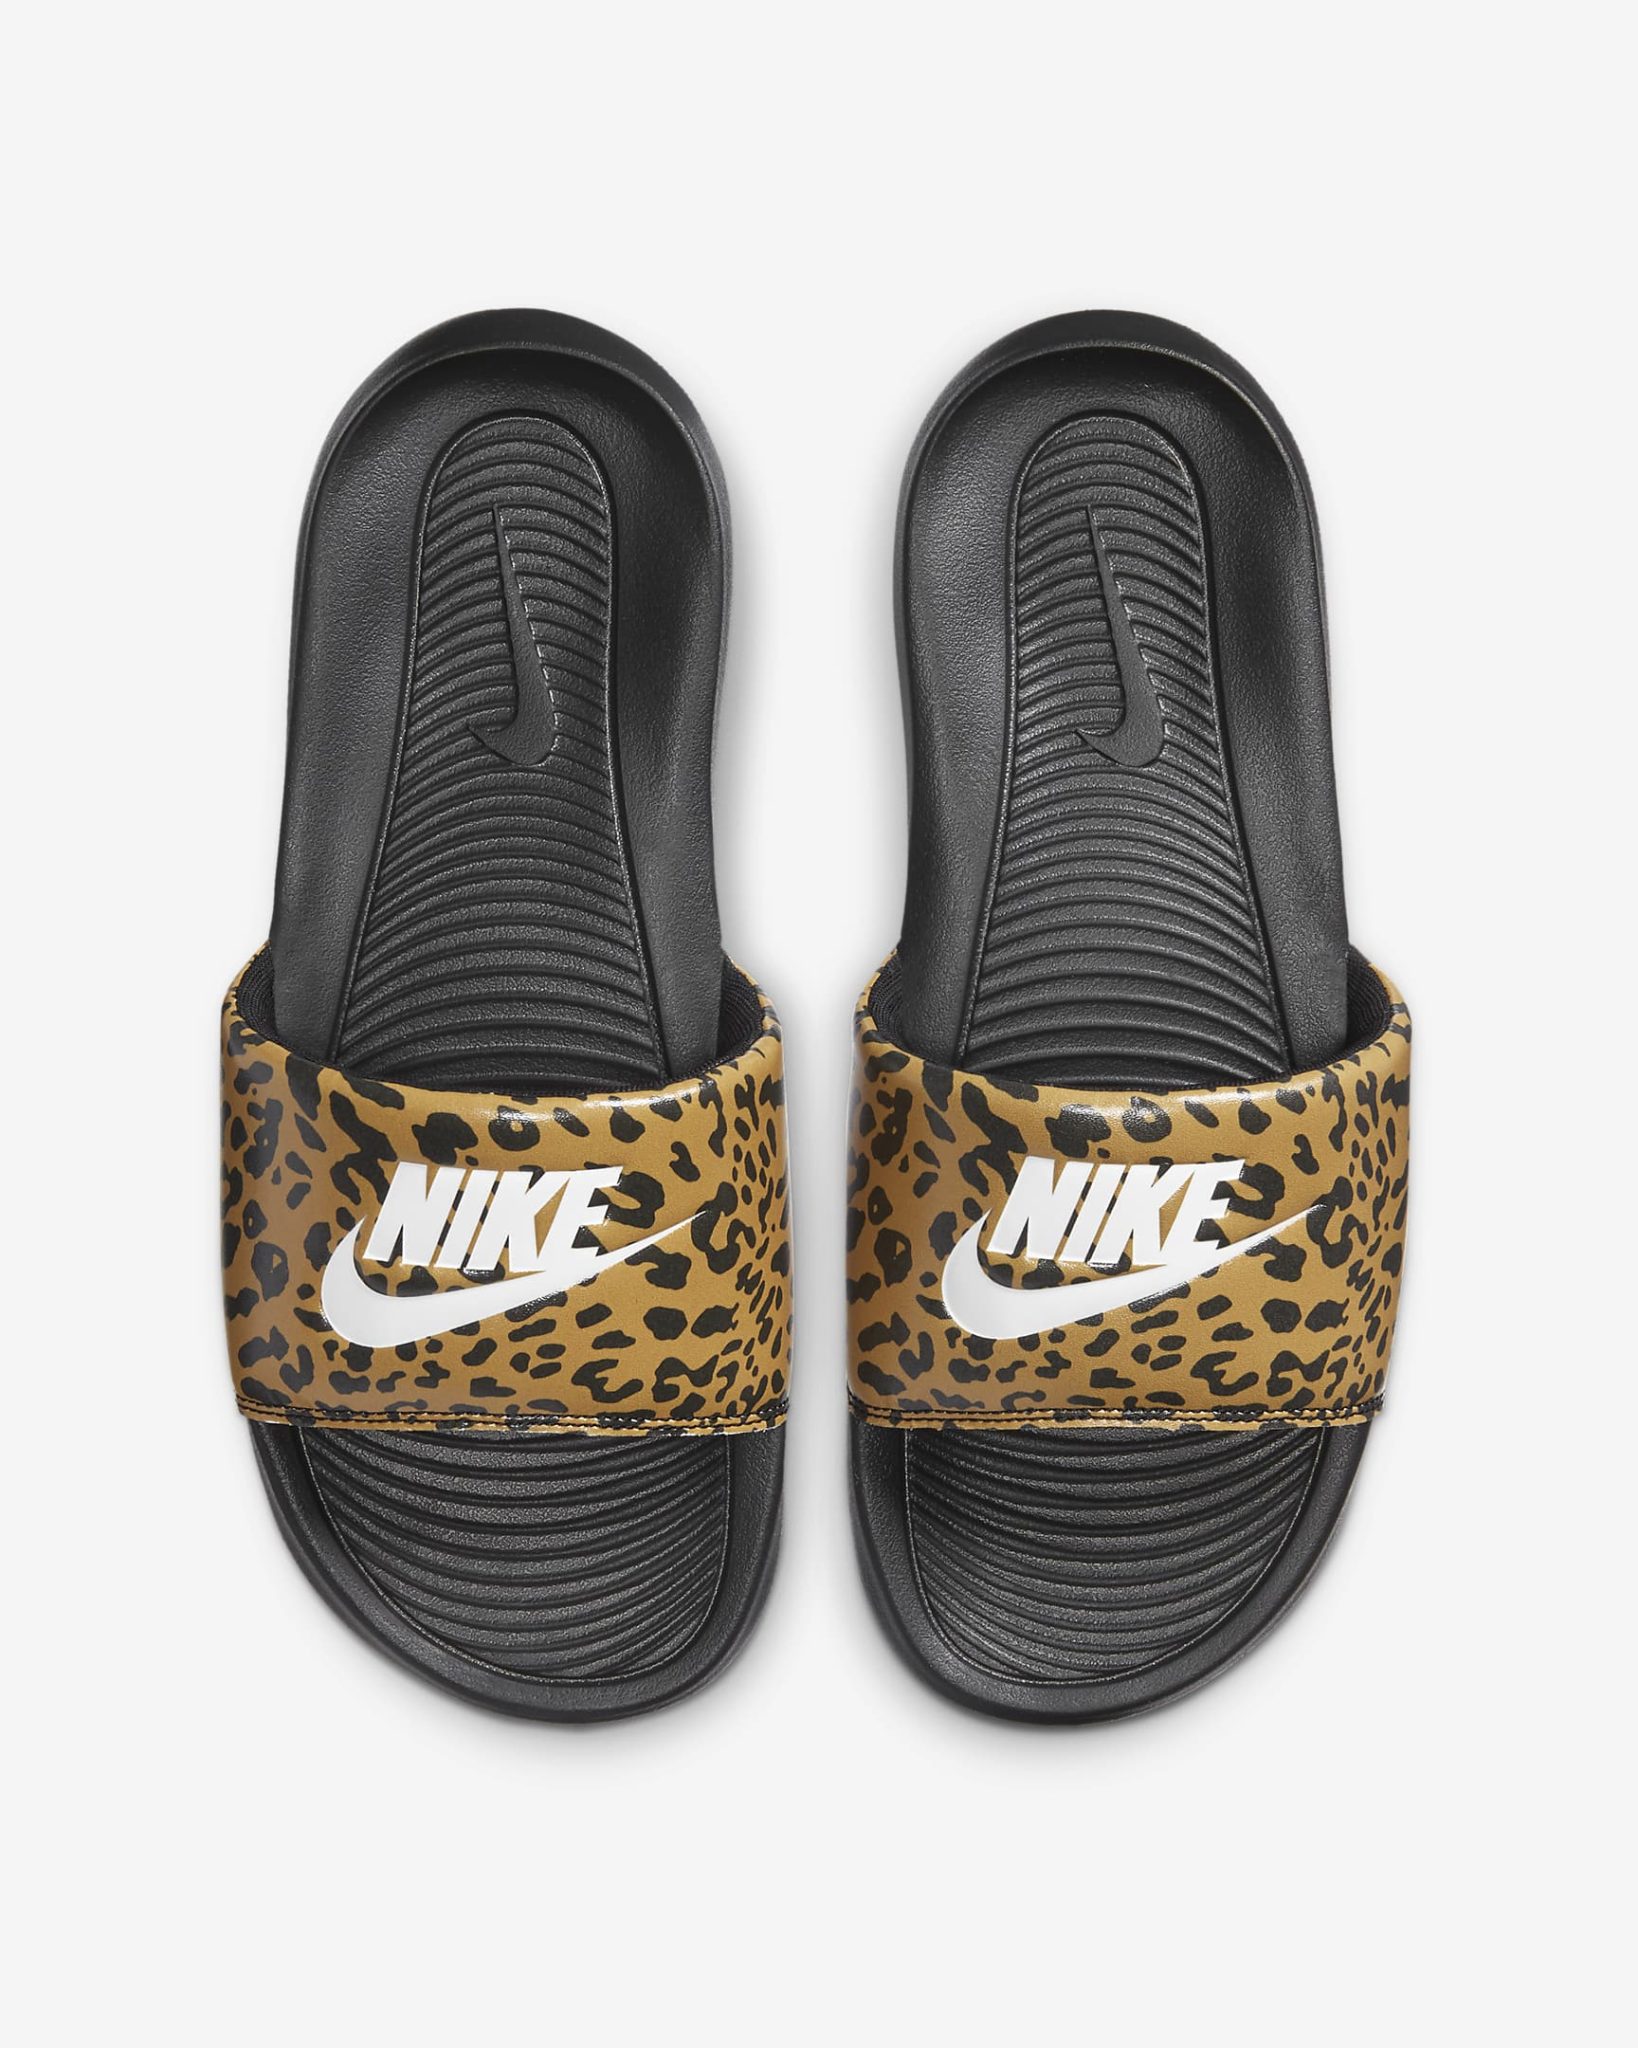 Nike Leopard Print Slides for $26.97 (Reg. $35.00)! - The Coupon Caroline